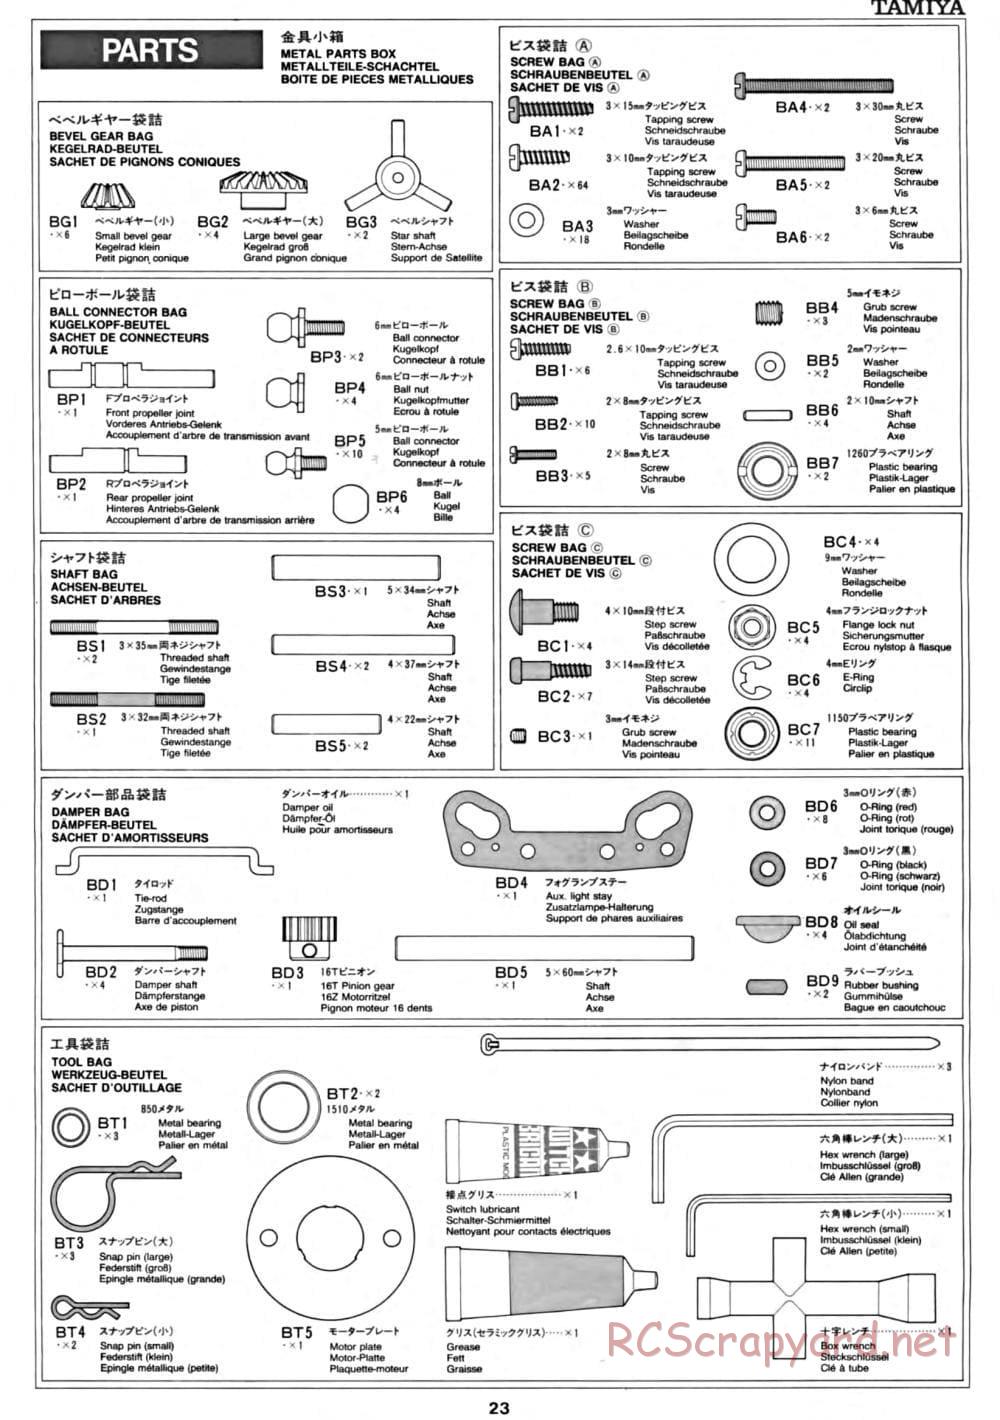 Tamiya - CC-01 Chassis - Manual - Page 23